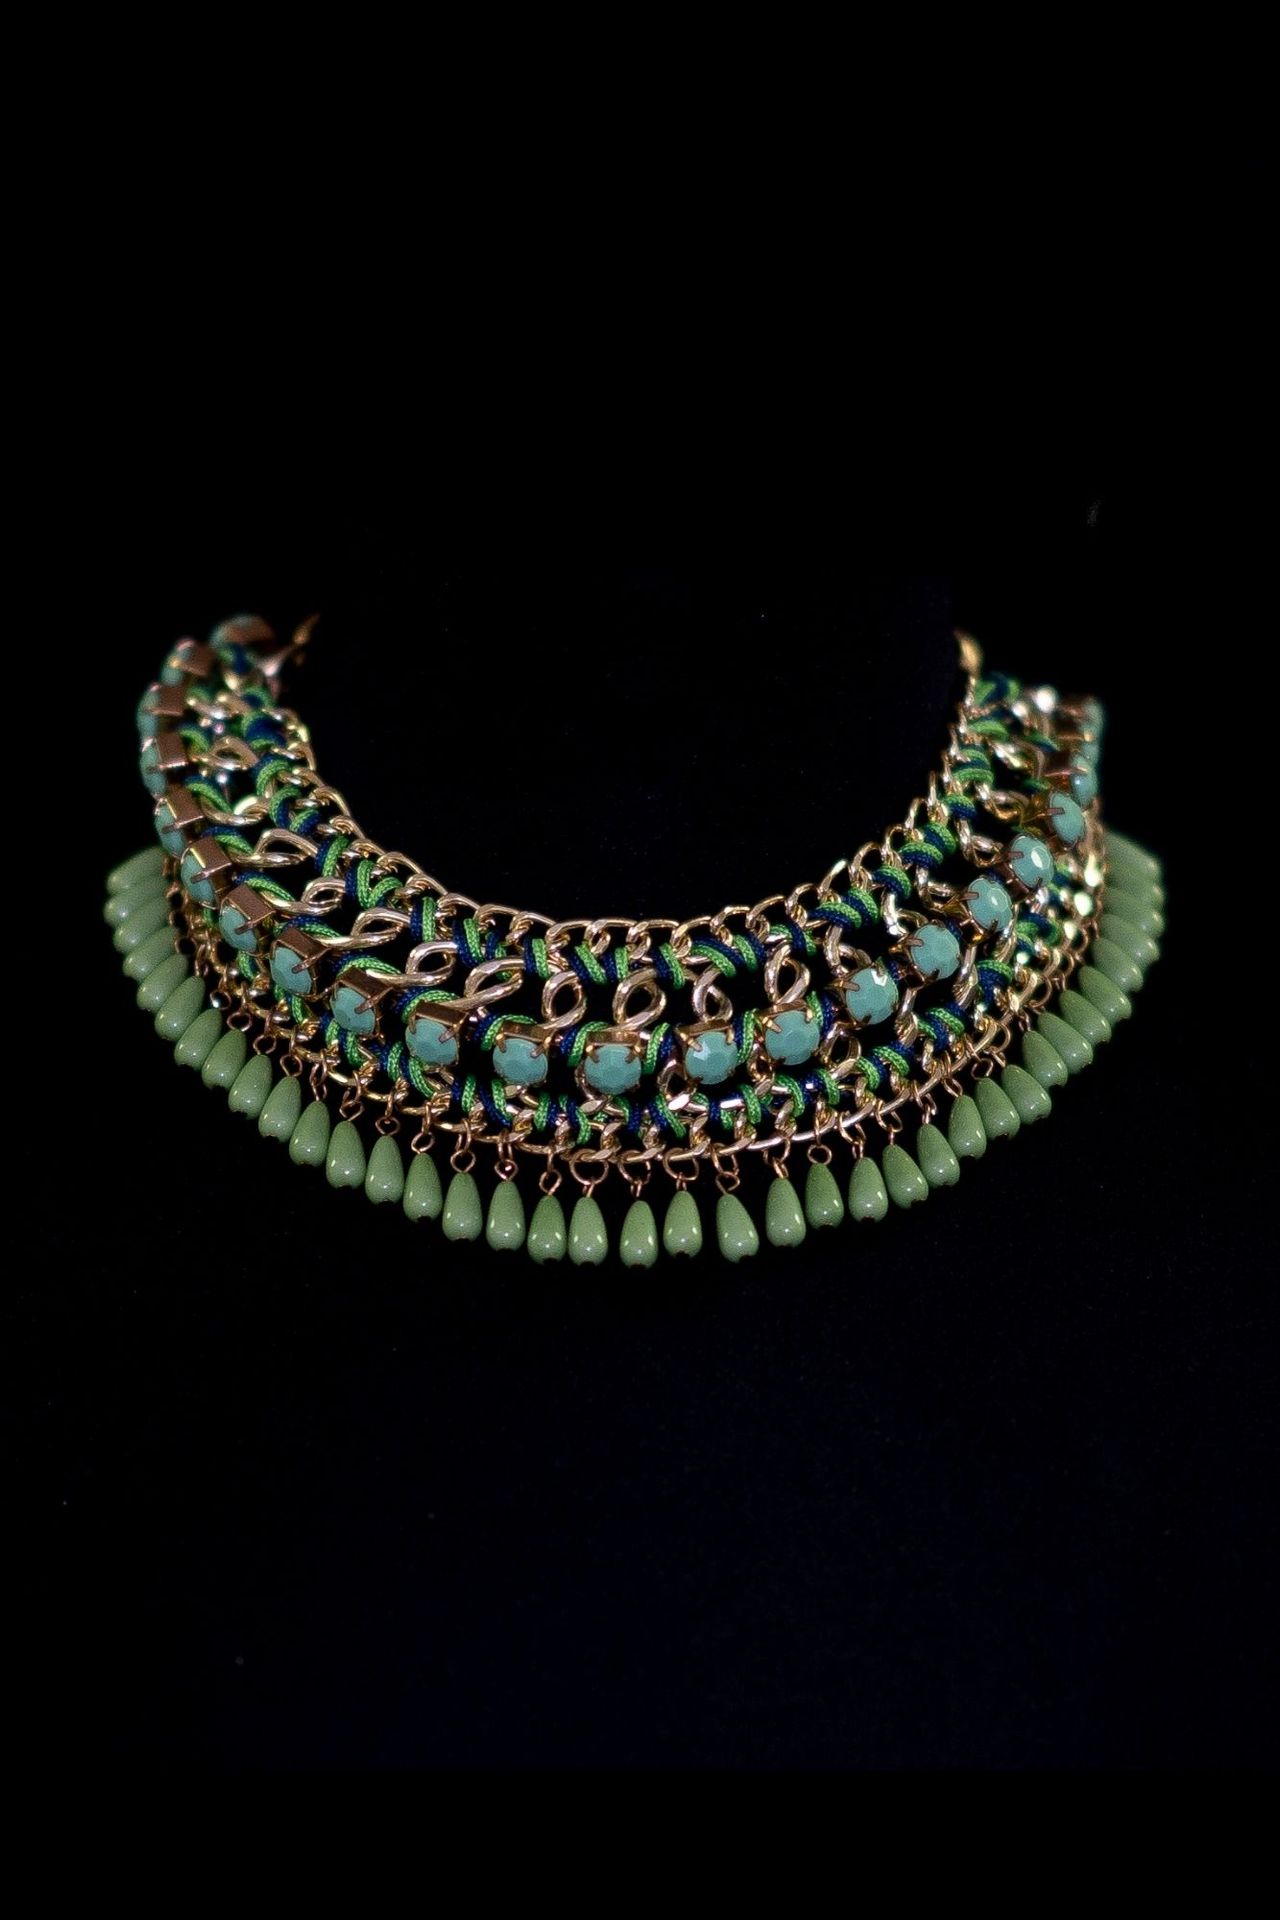 Collier antique Halsband aus türkisfarbenem Perlengeflecht aus Bergungsarbeiten.